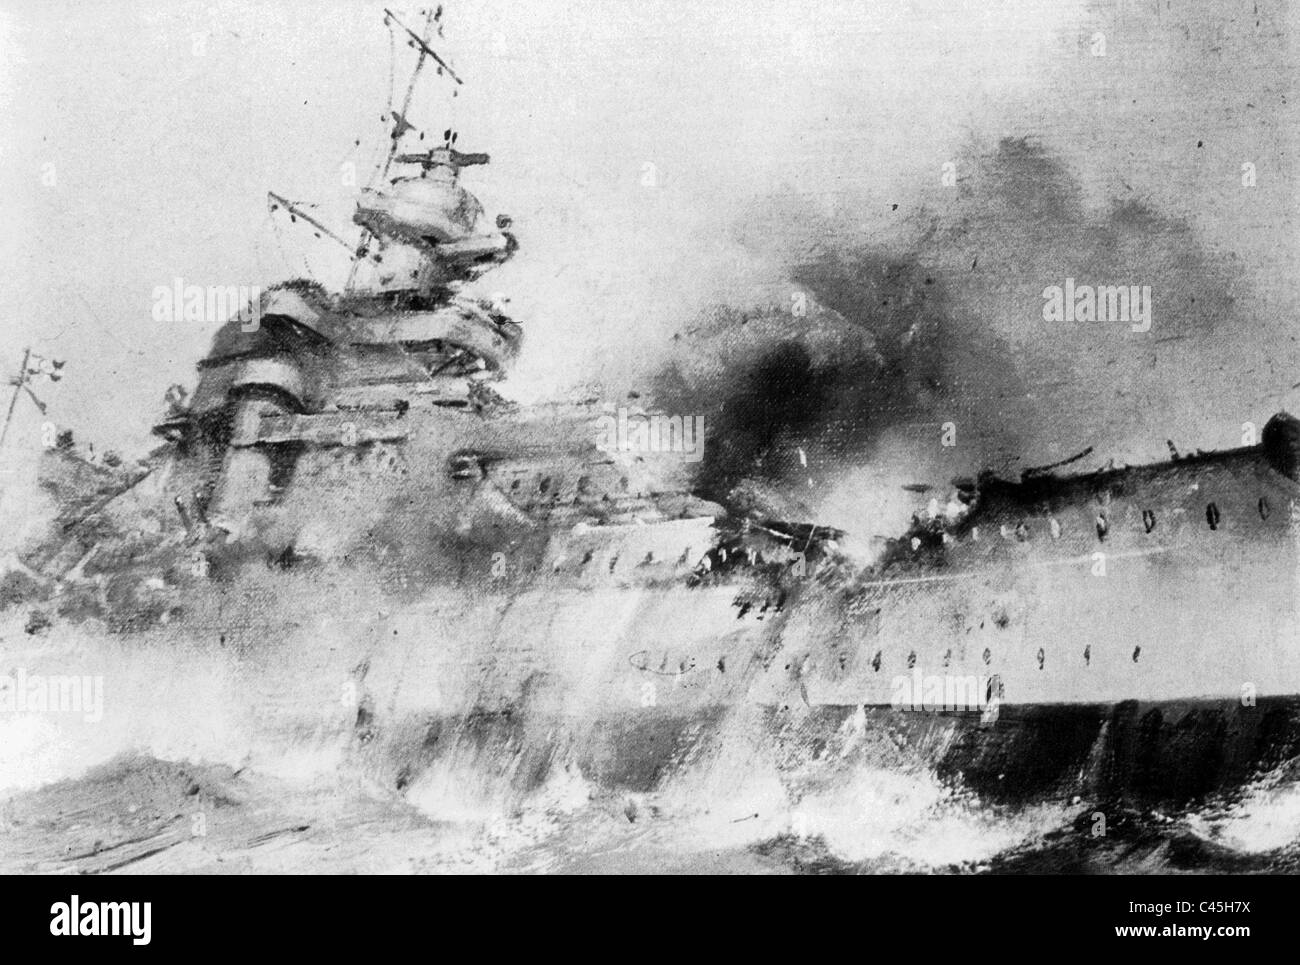 Drawing Of The Sinking Battleship Bismarck Stock Photo